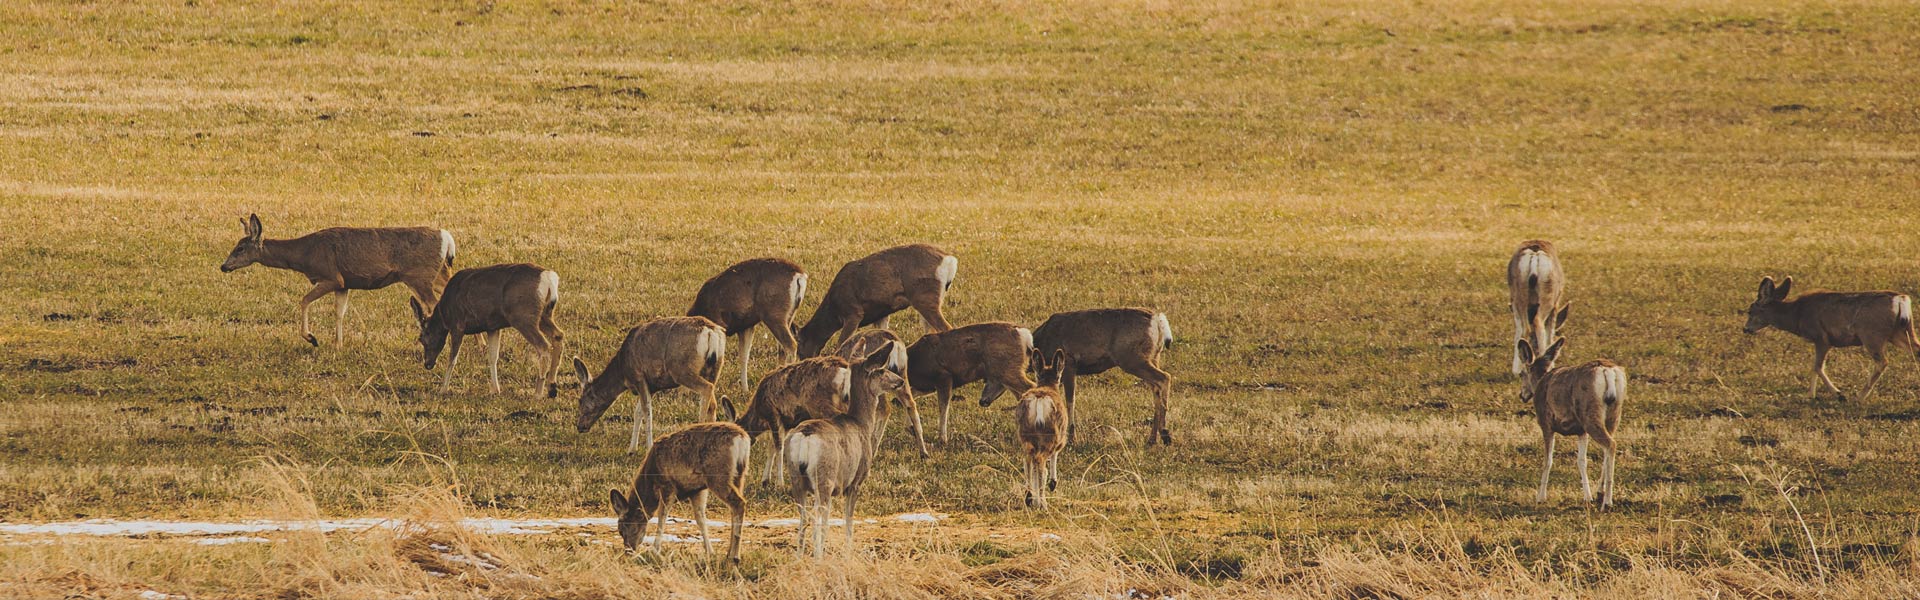 Herd of deer in field